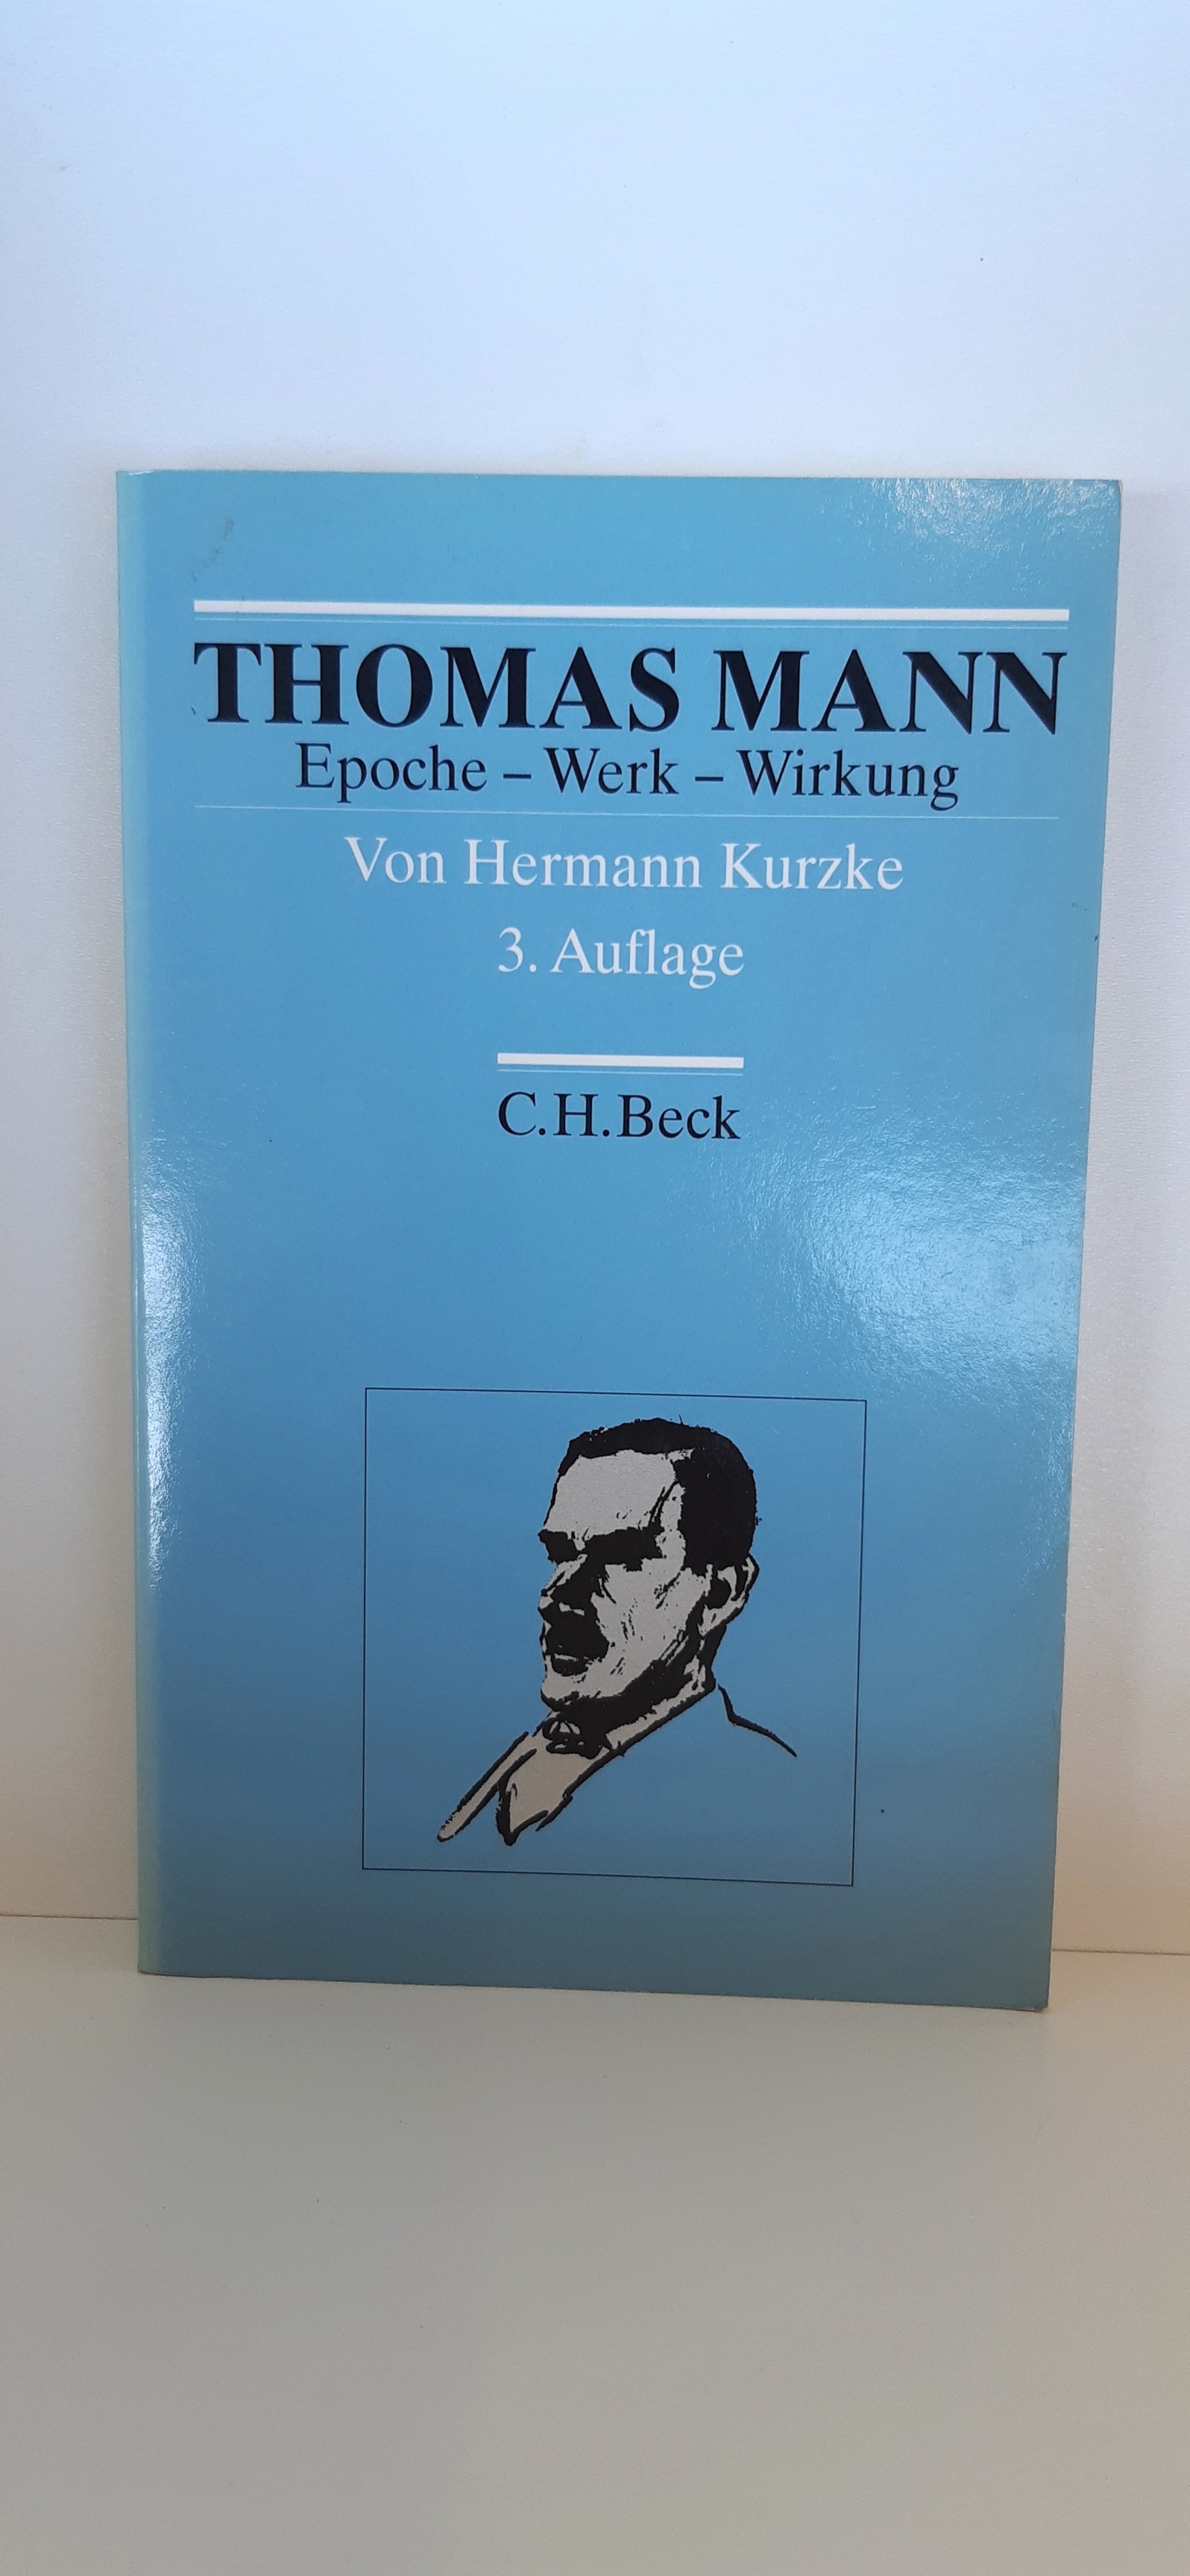 Thomas Mann Epoche - Werk - Wirkung - Kurzke, Hermann